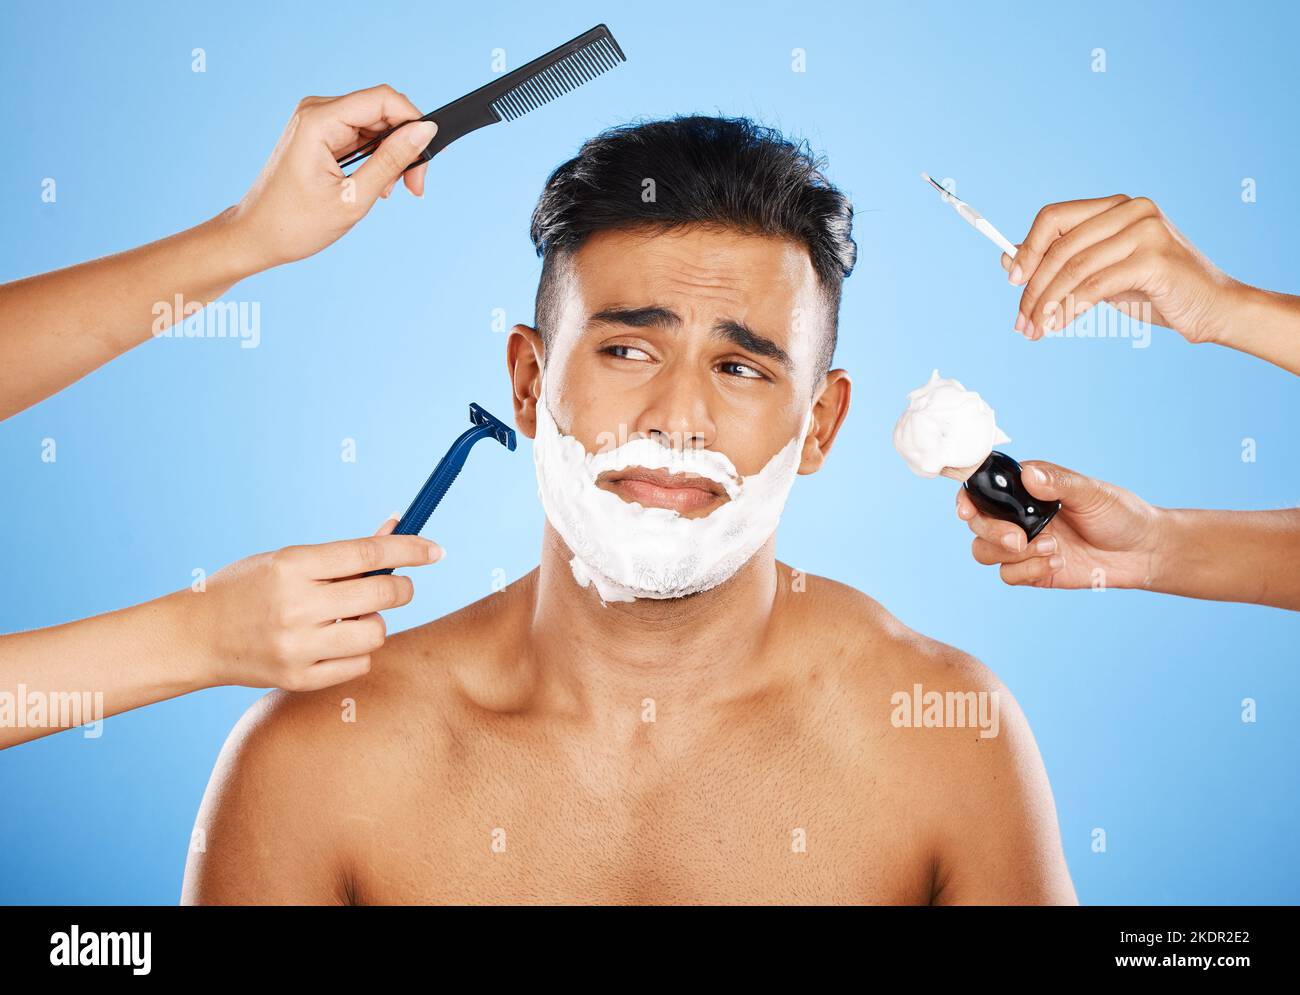 Gesicht, Rasur und Pflege mit den Händen halten Geräte zum Rasieren oder Bürsten Haare im Studio auf einem blauen Hintergrund. Hautpflege, Wellness und Luxus mit Stockfoto